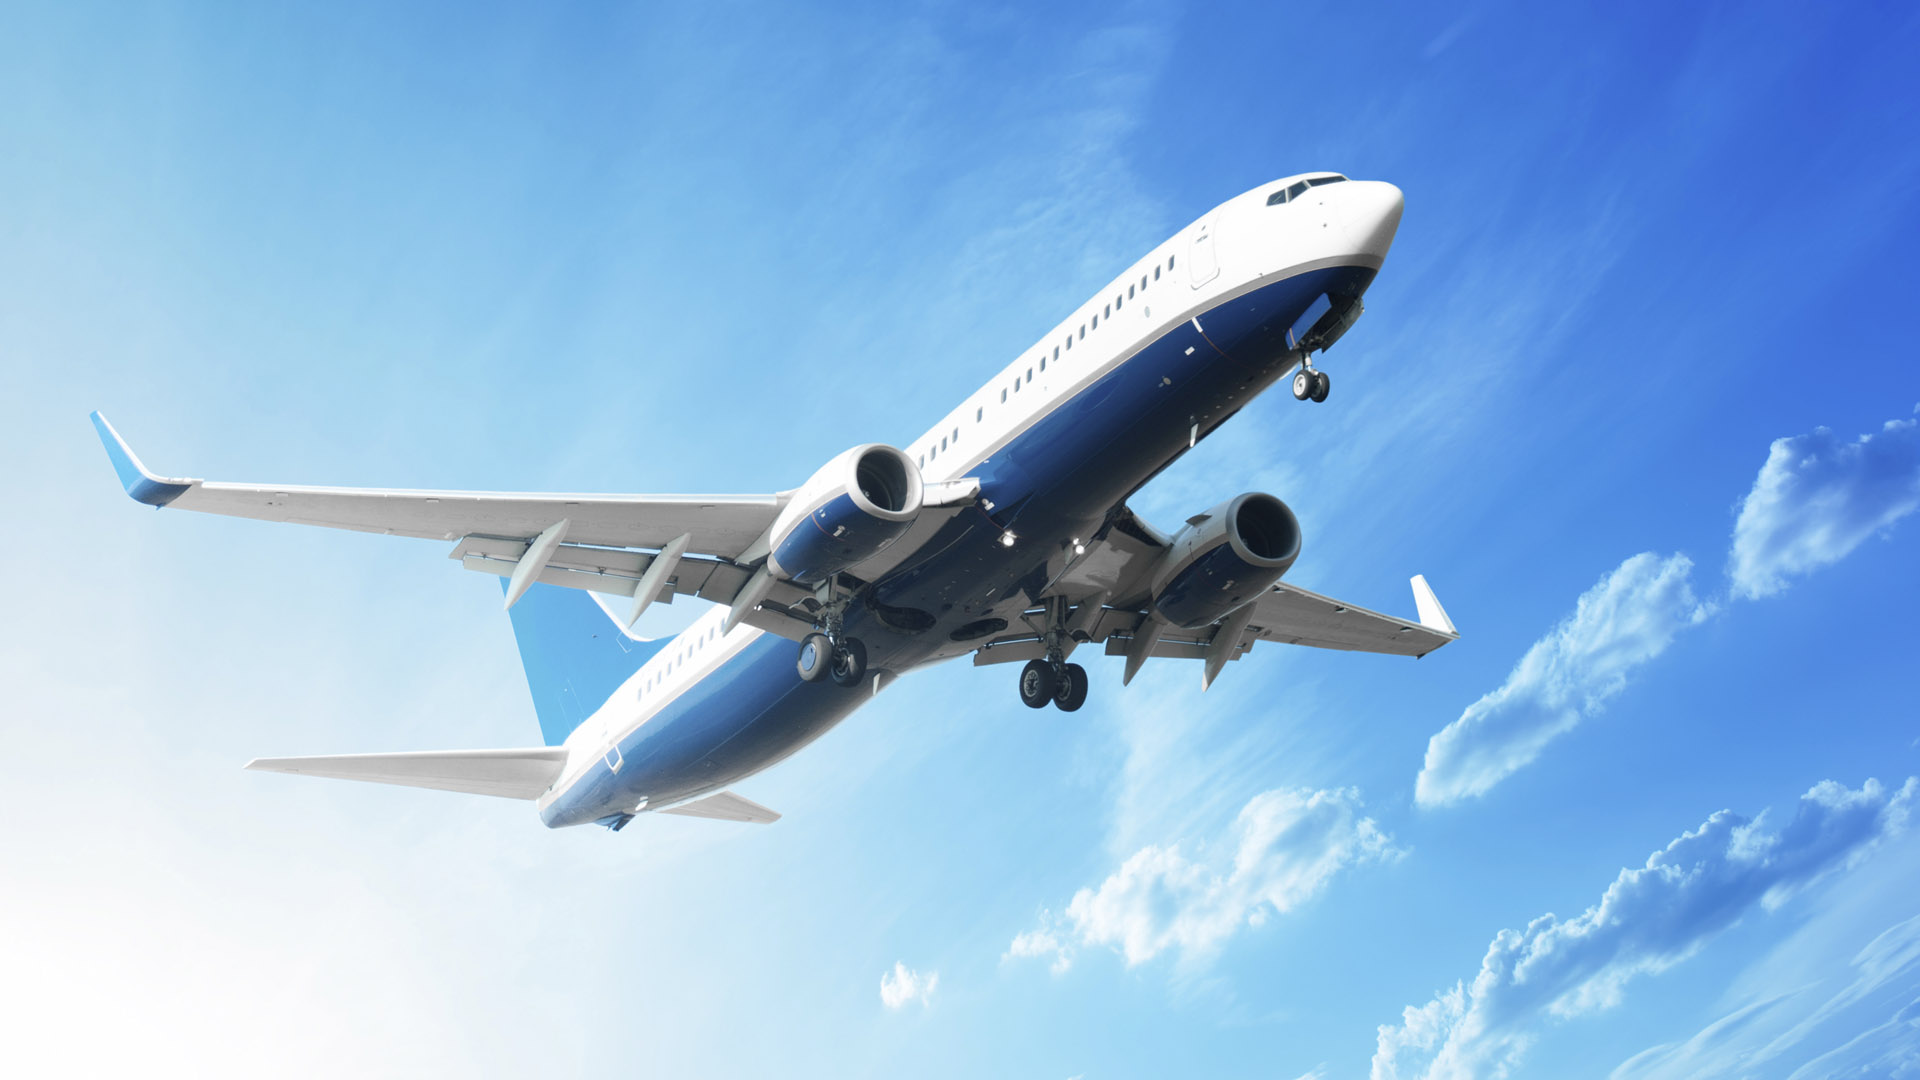 La invención busca disminuir los accidentes aéreos que, según una investigación, ocurren en su mayoría durante el vuelo